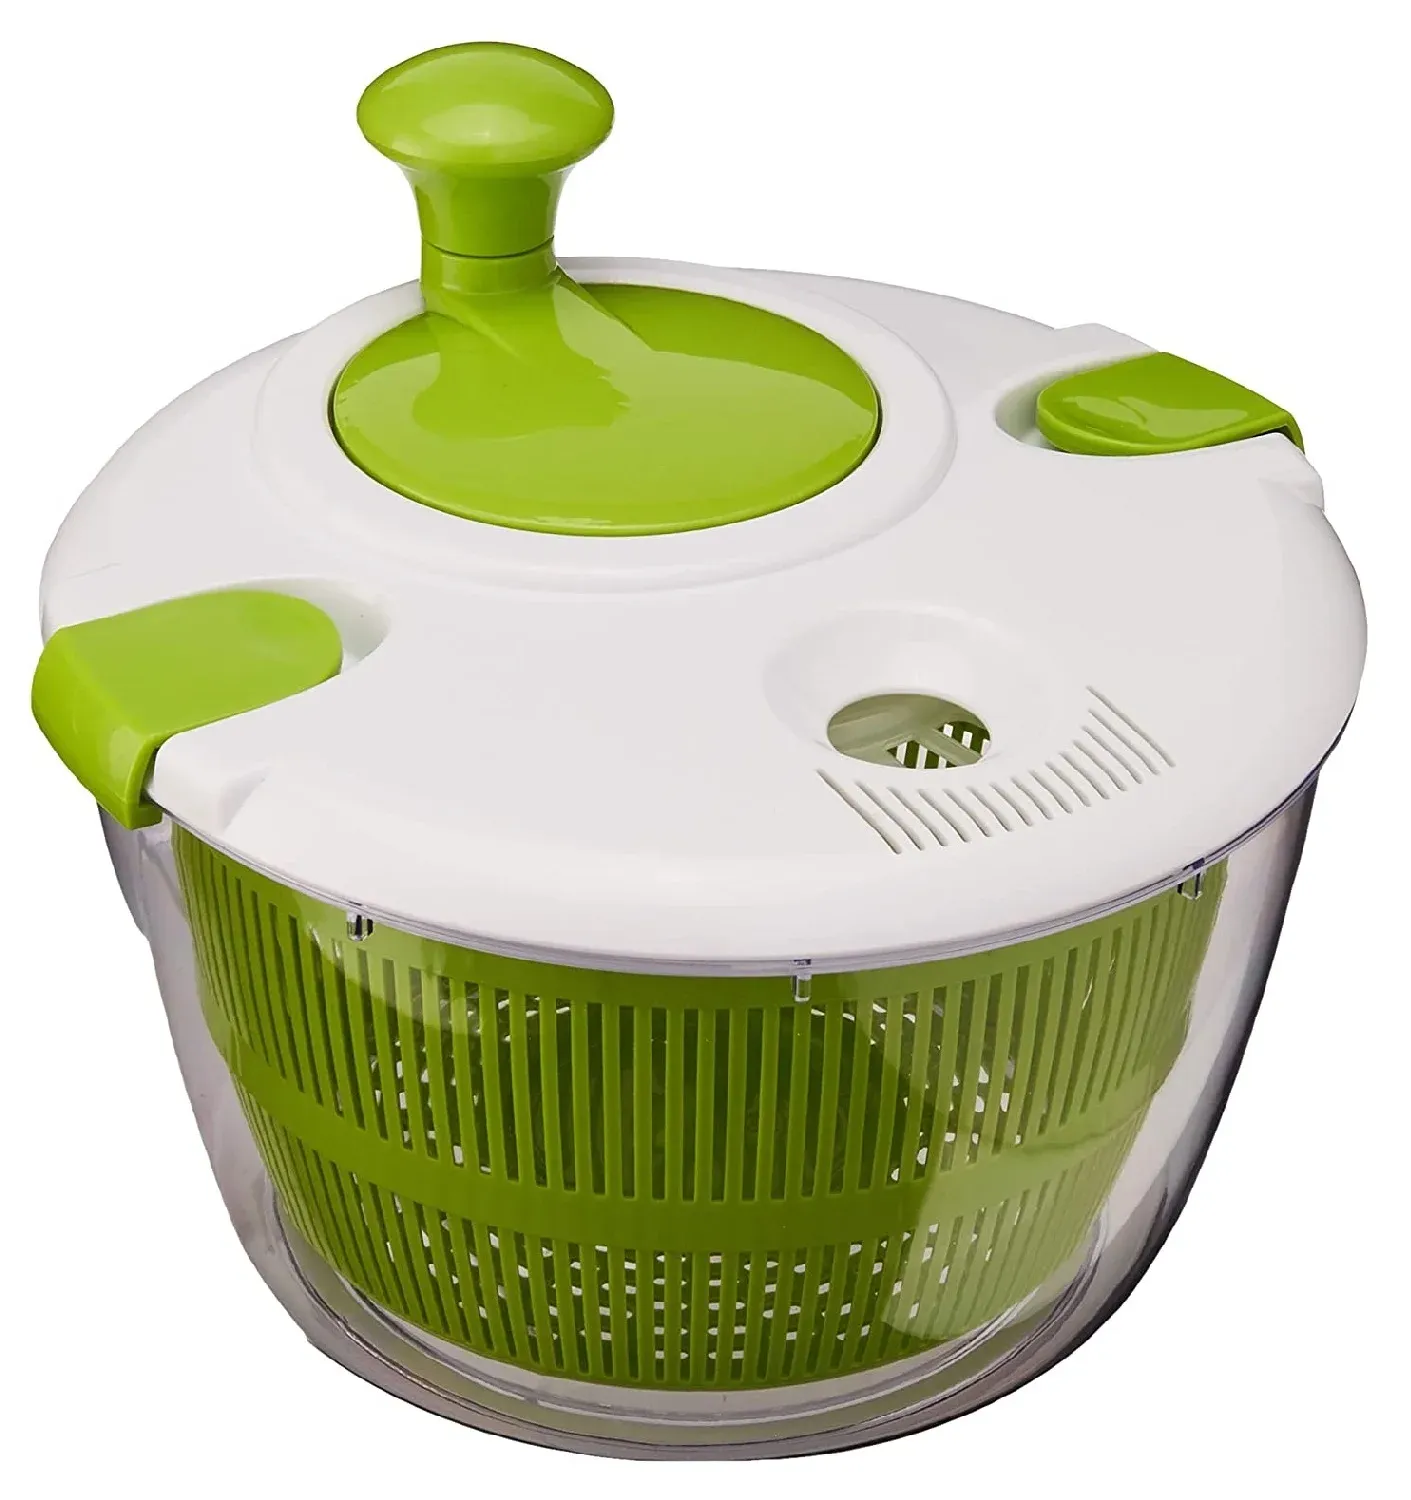 Album verdure insalata spinner lettuce foglia vegetale centrifuga verdura lavatrice asciugatrice per scarico di scottano più croccante per lavare l'asciugatura a foglia